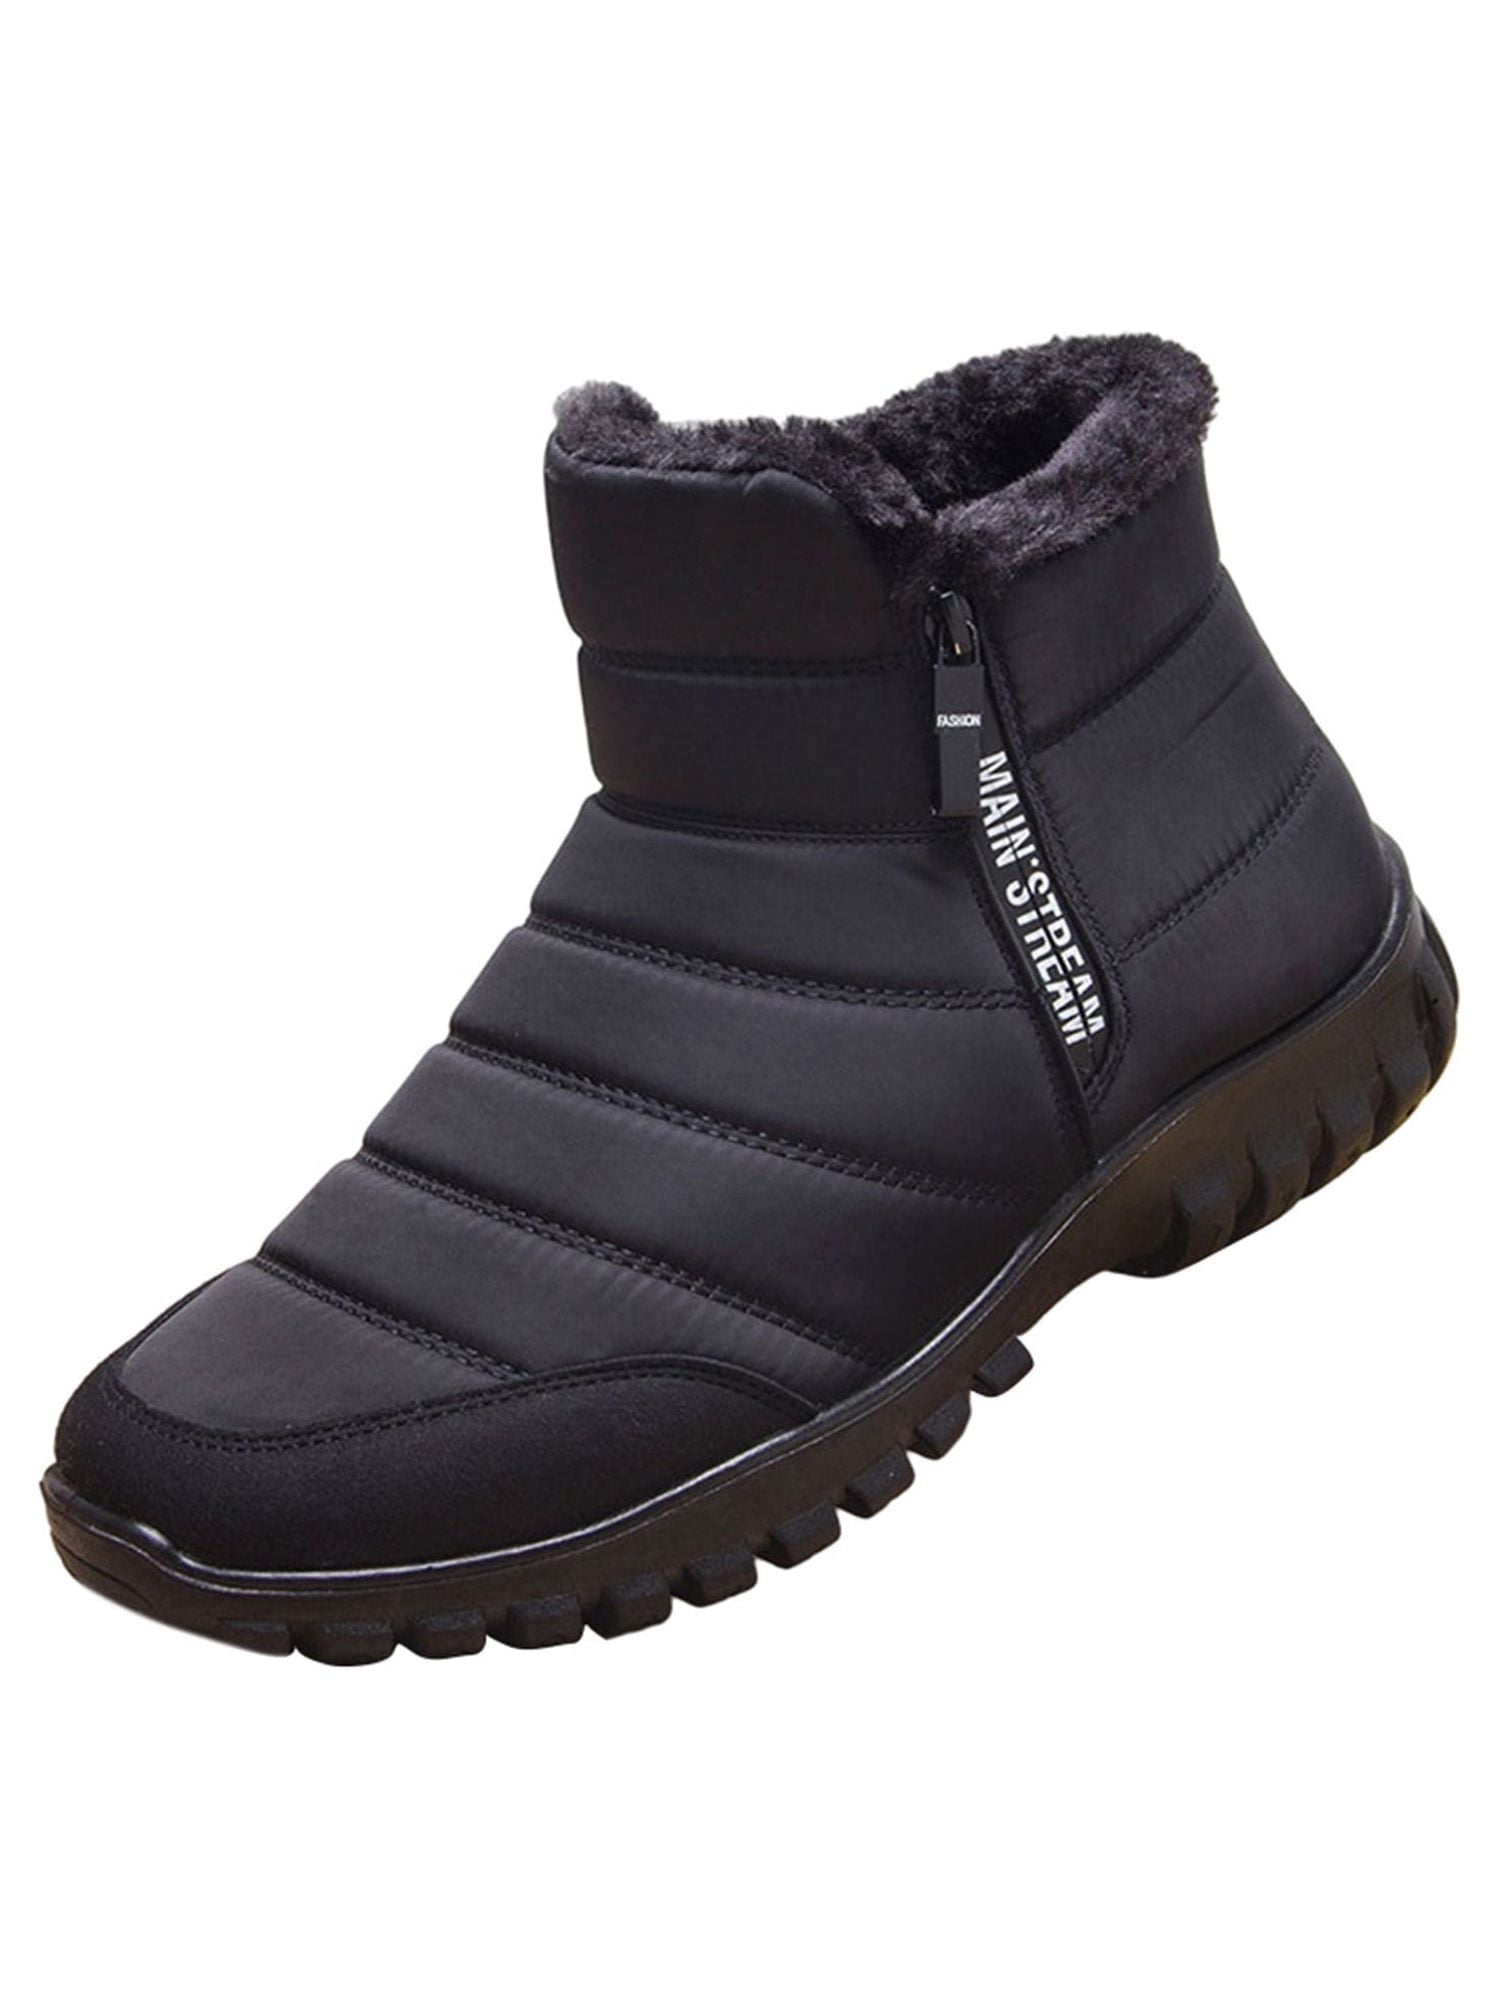 GENILU Men's Winter Waterproof Snow Boots Non-Slip Walking Outdoor ...